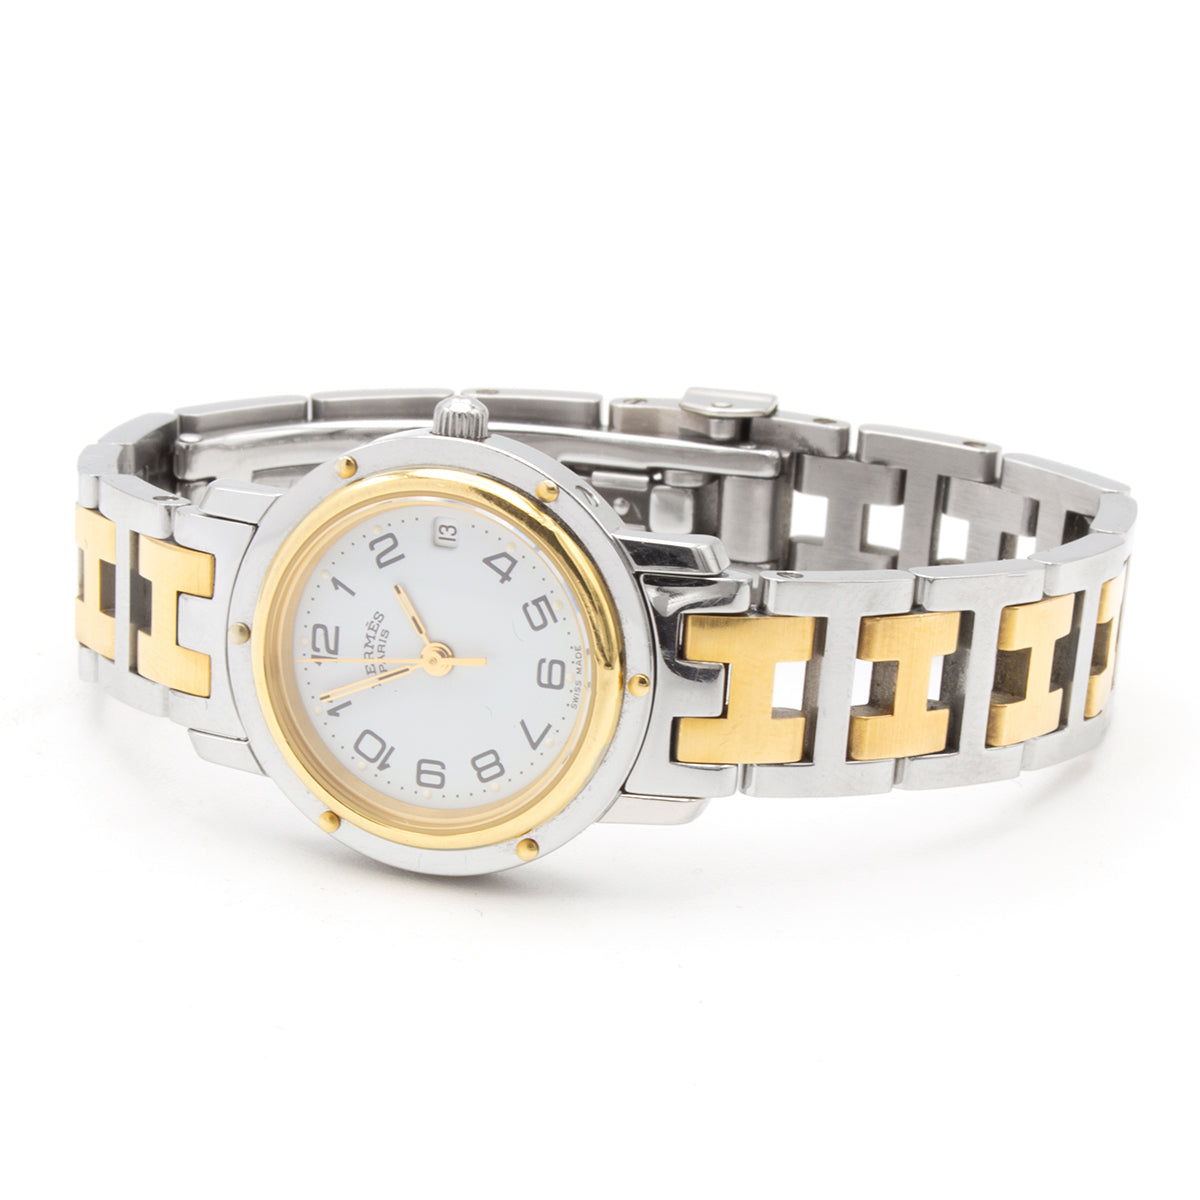 Hermes Clipper CL4.220 watch